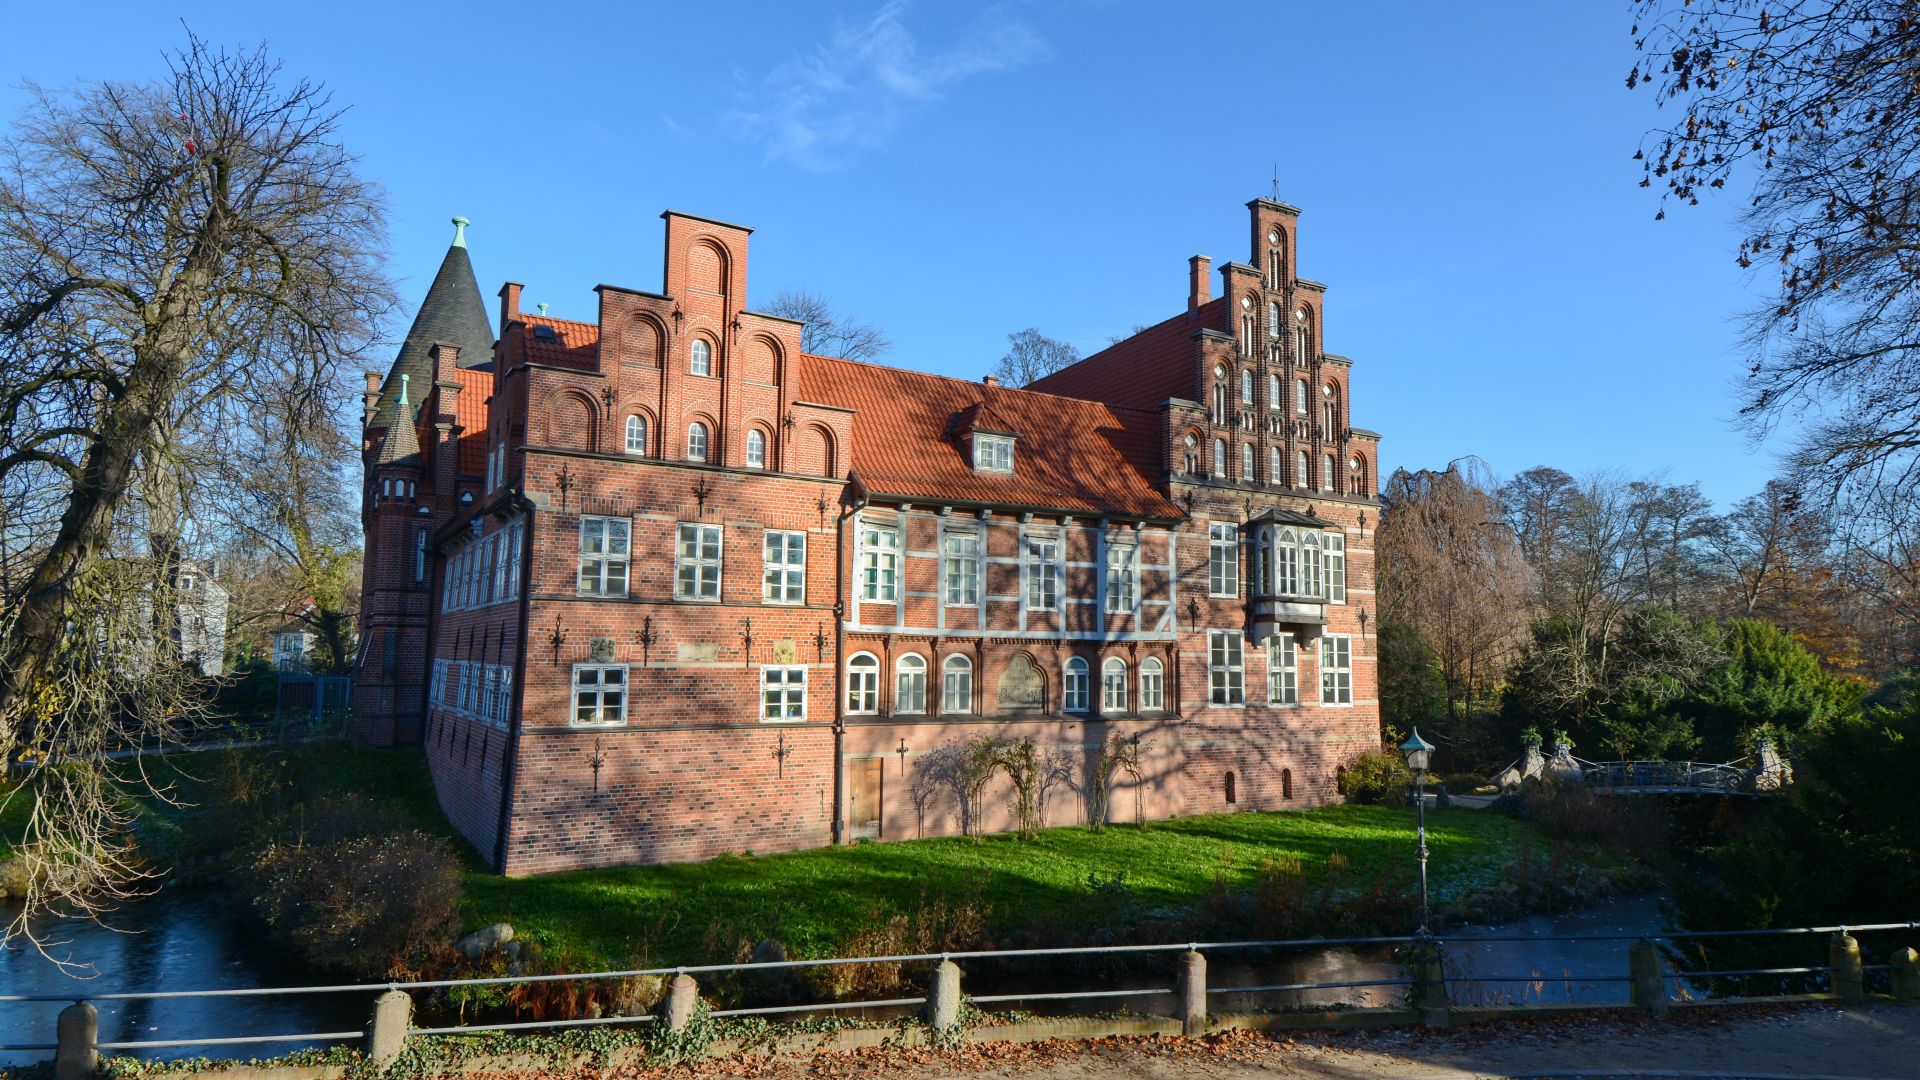 Hamburg: Bergedorfer Schloss in Bergedorf, home of the local history museum